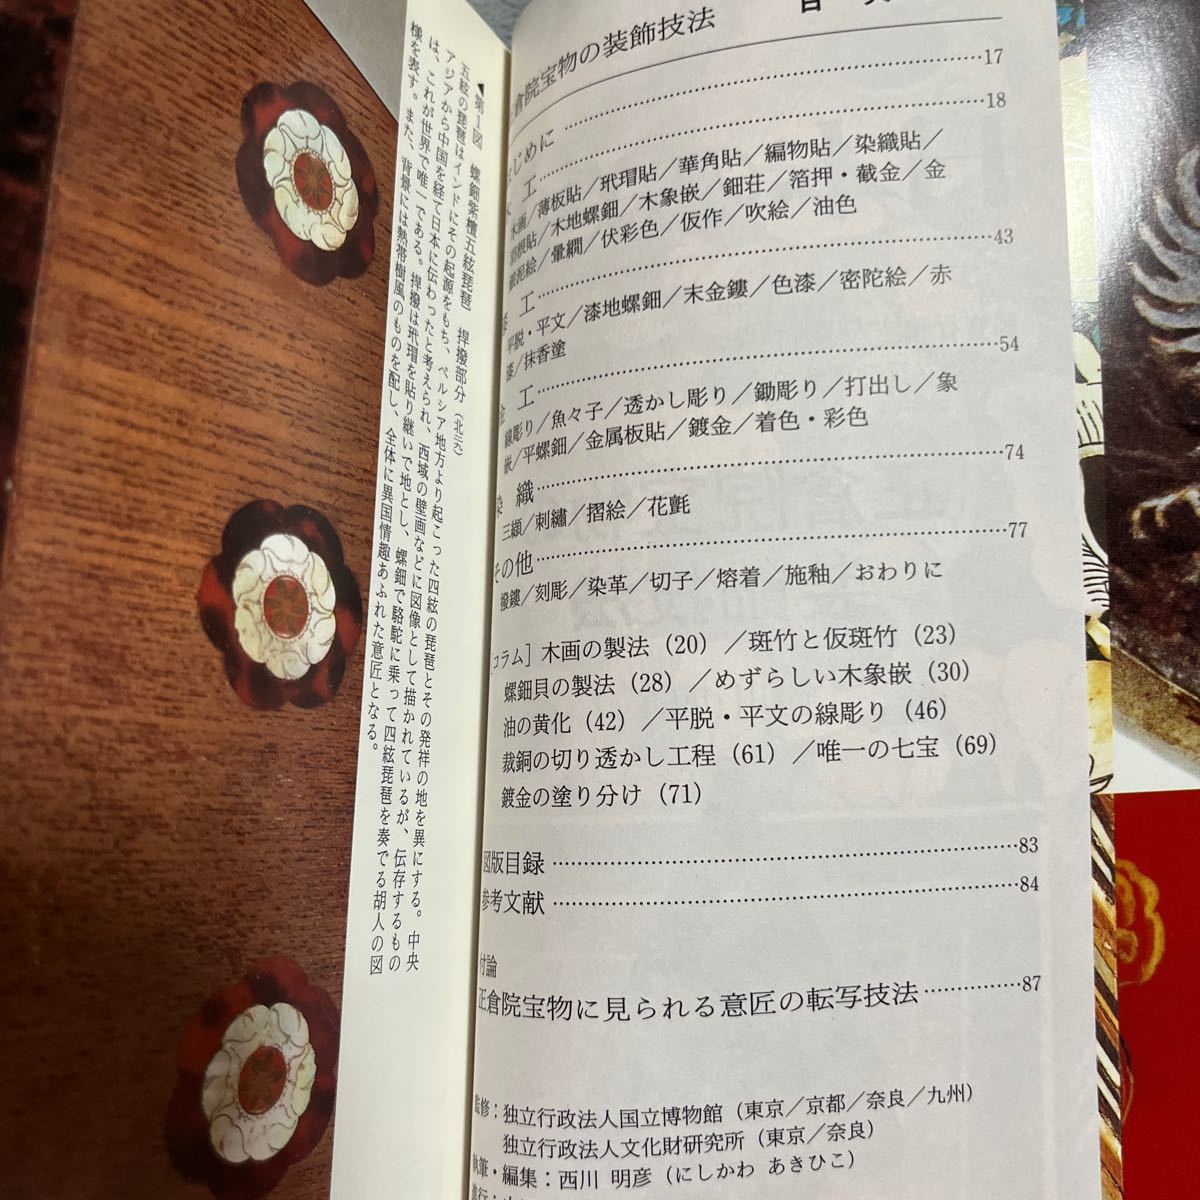 日本の美術 No.486 正倉院宝物の装飾技法 至文堂 木工 漆工 金工 染織_画像4